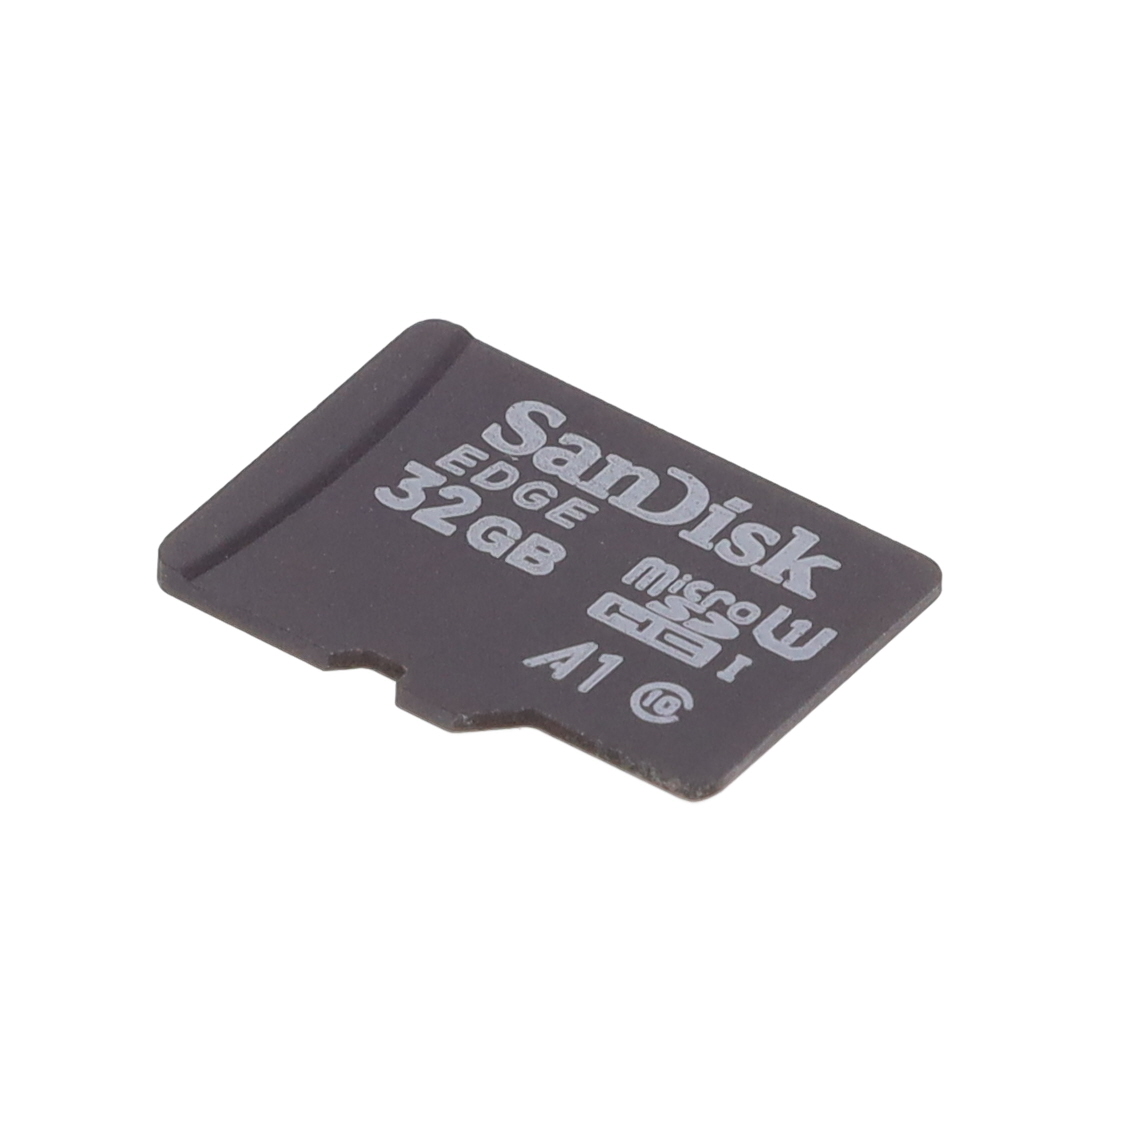 【SC0251L】MICROSD CARD 32GB SANDISK